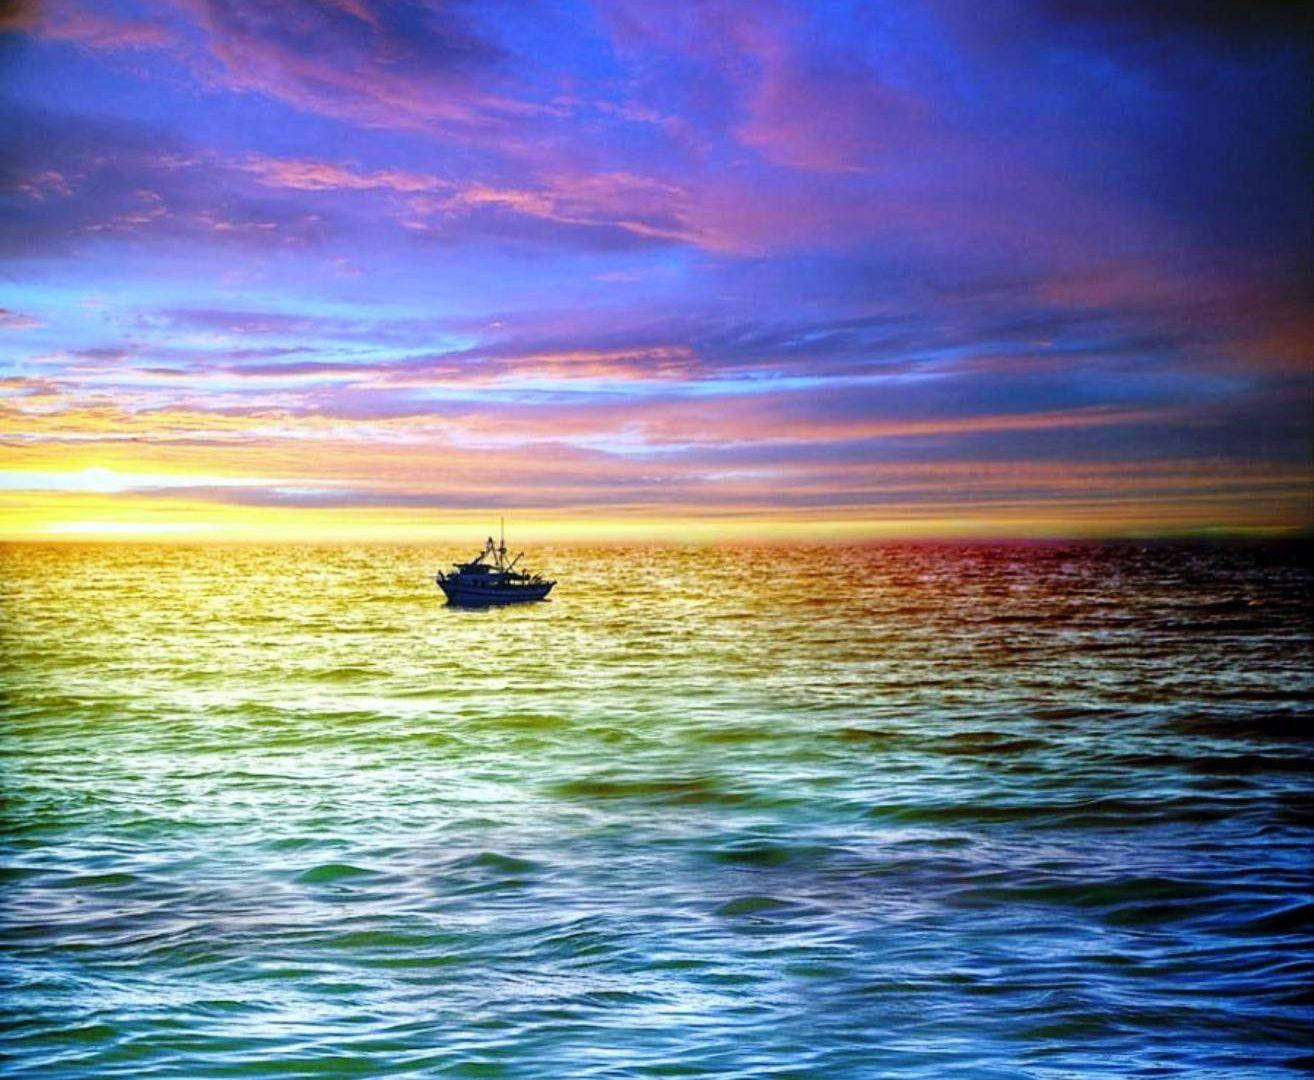 Sunset Ocean 1314 X 1080 Wallpaper